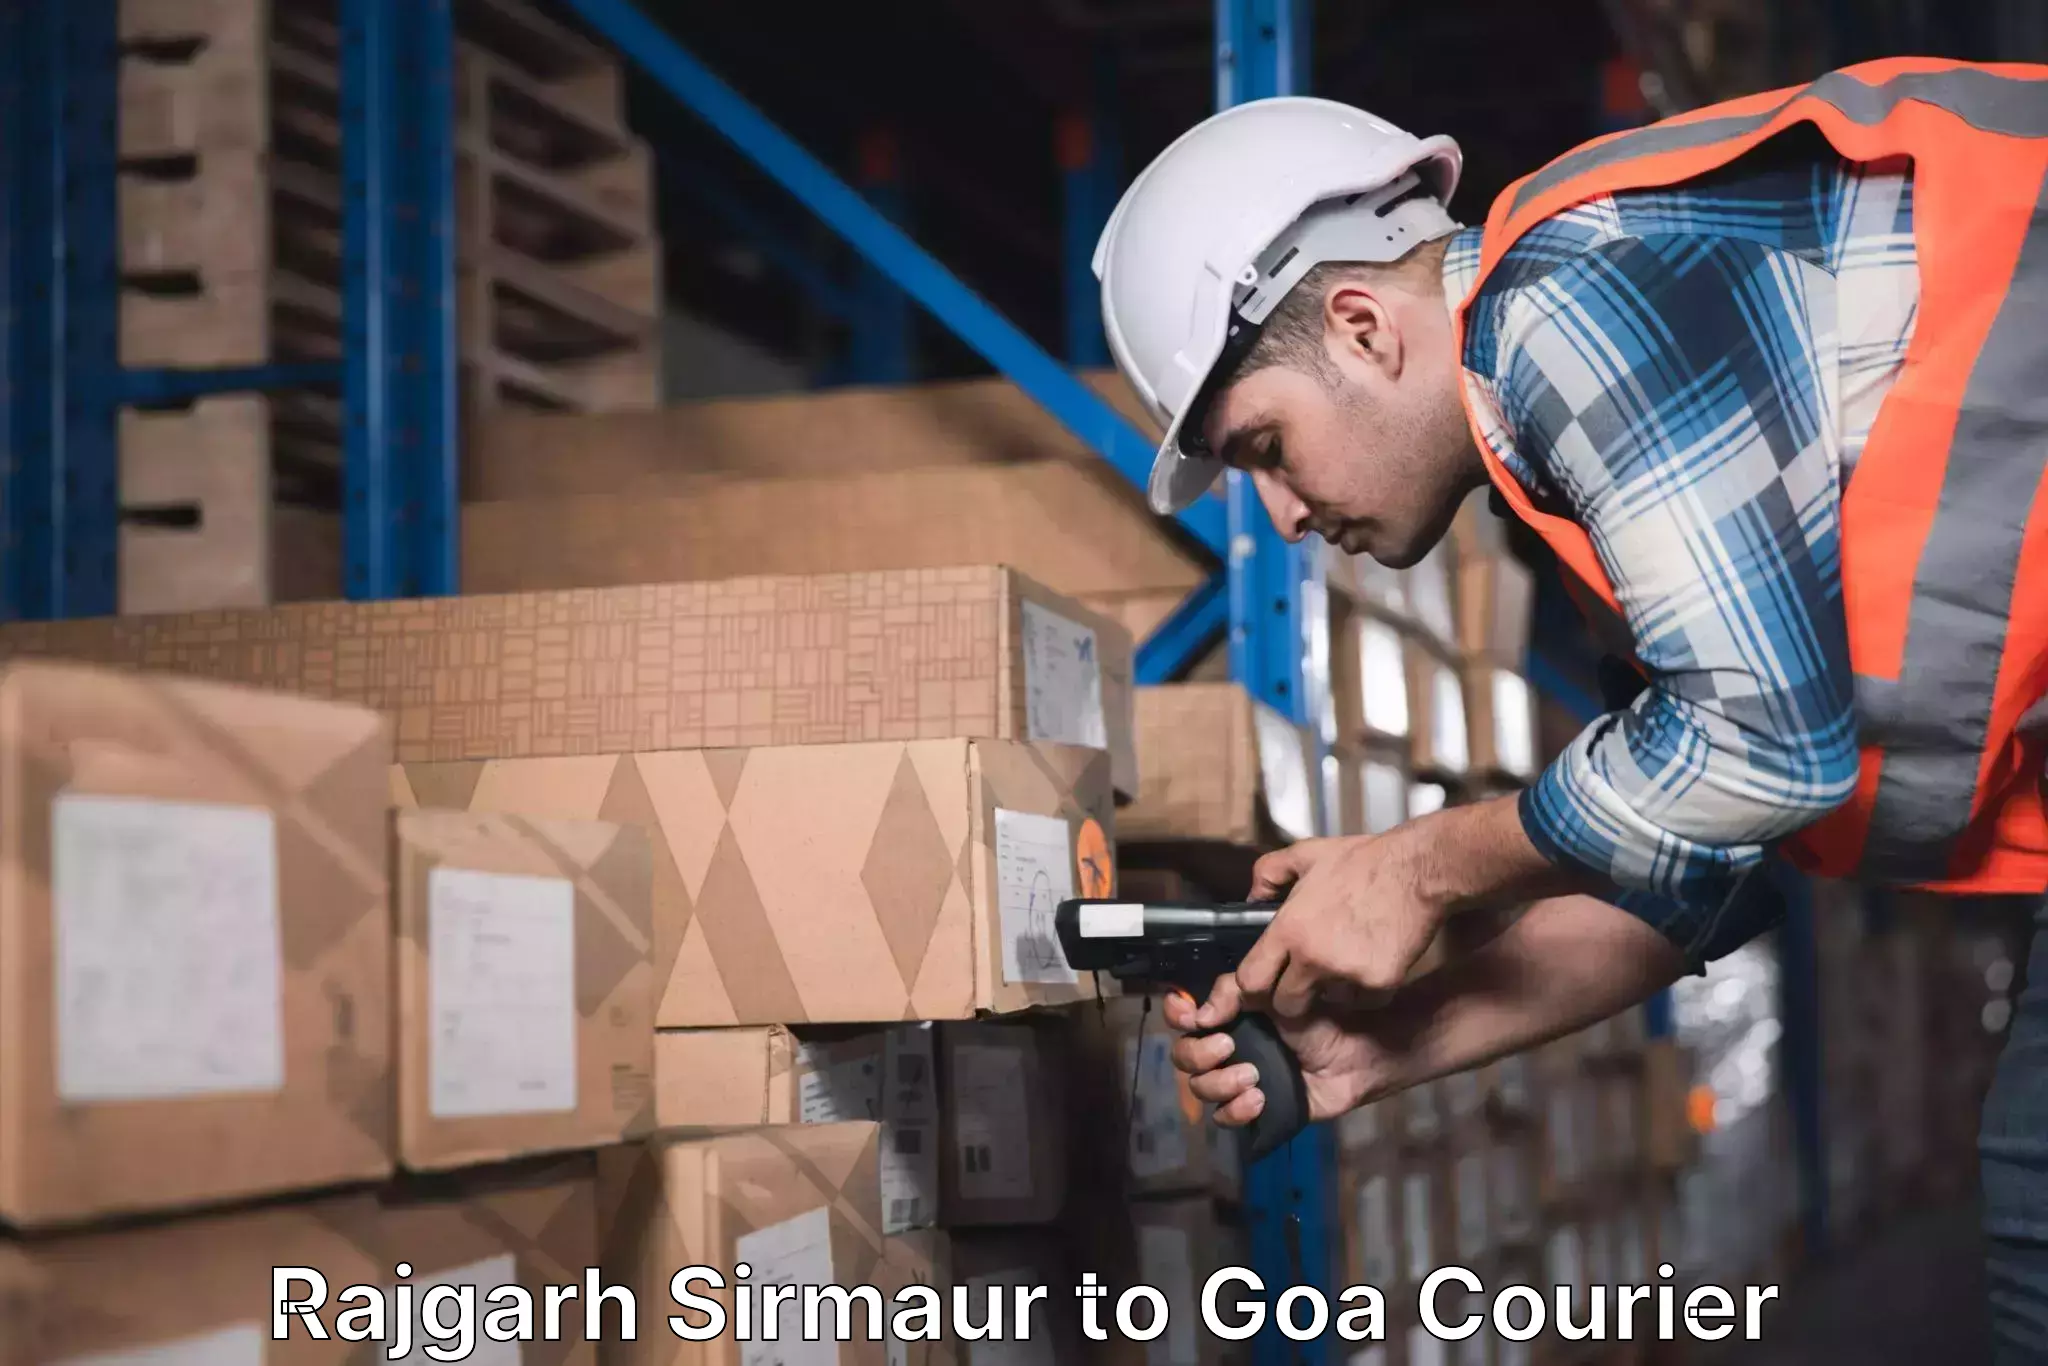 Seamless shipping experience Rajgarh Sirmaur to Panjim